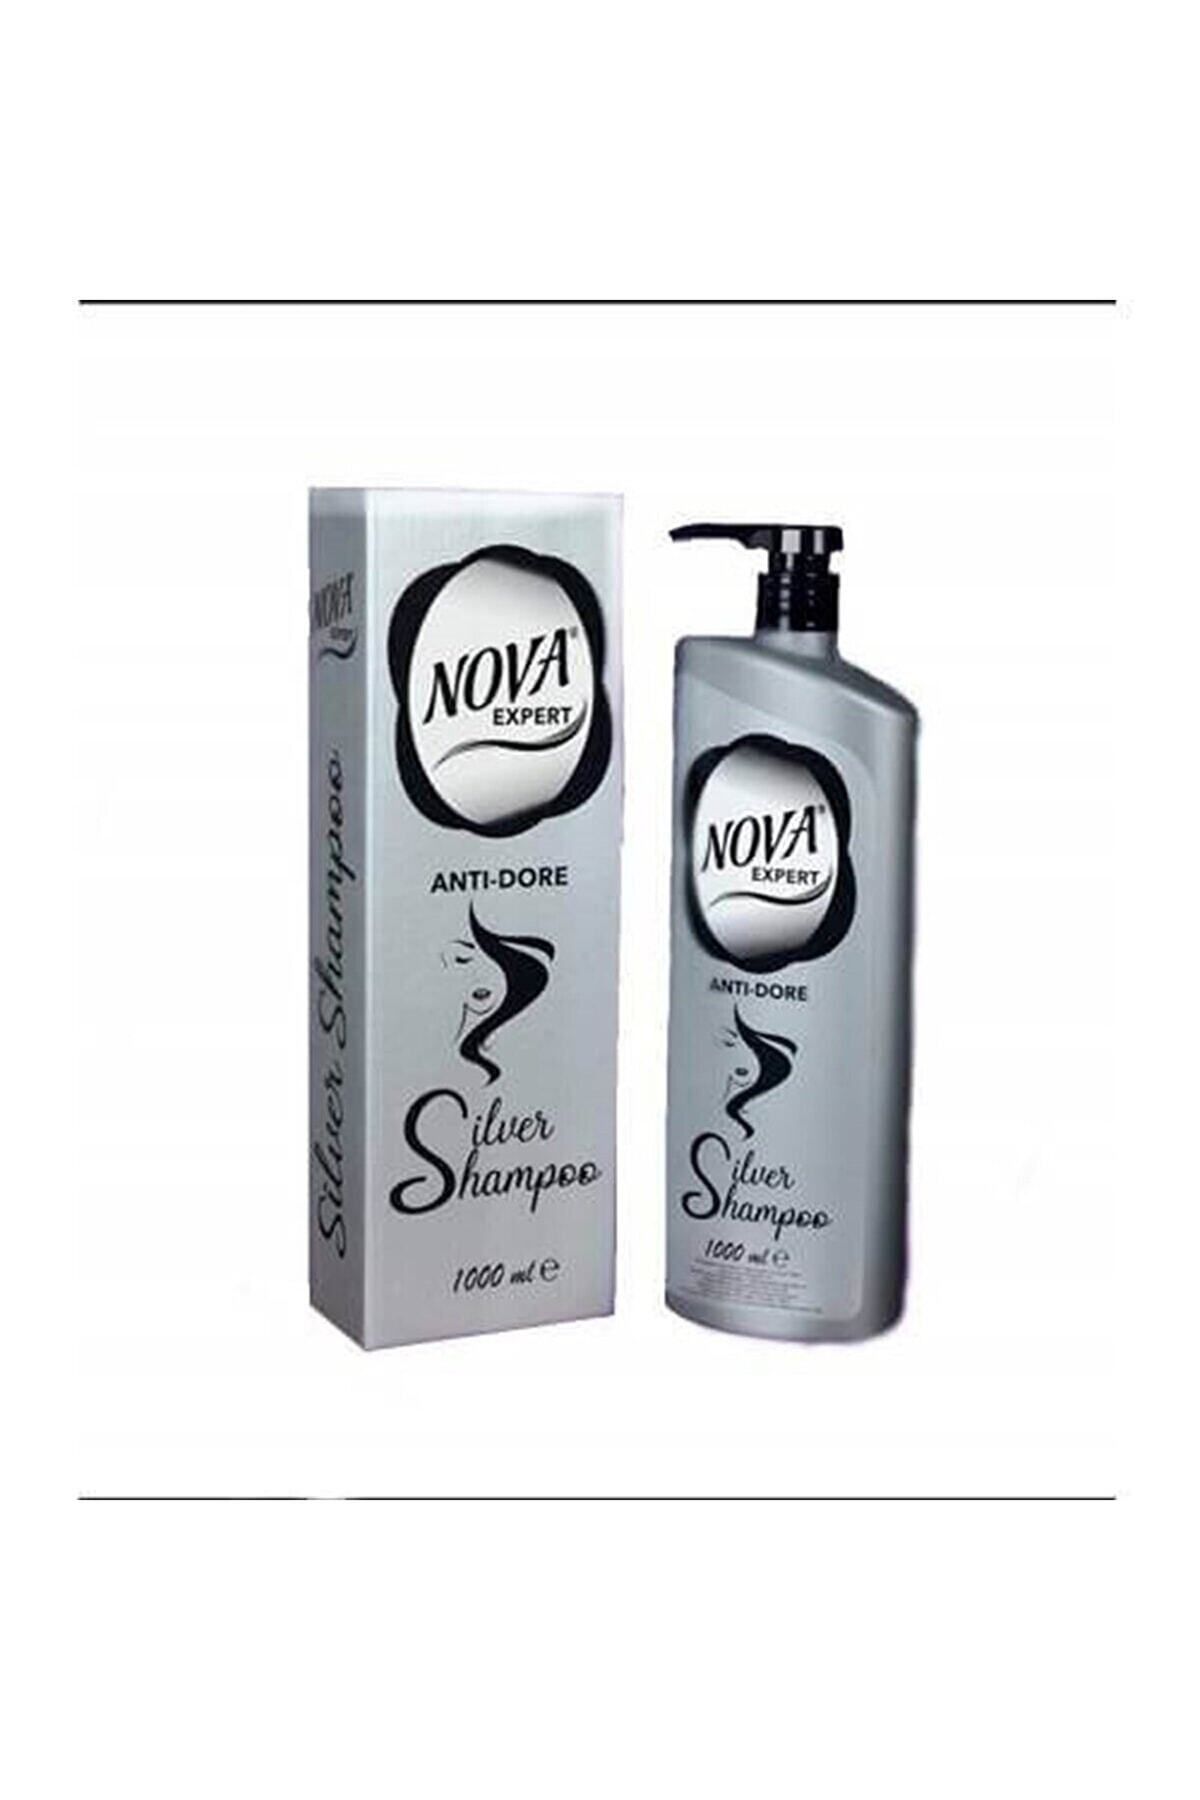 Nova Anti-dore For White Hair Silver Shampoo 1000 + Mll